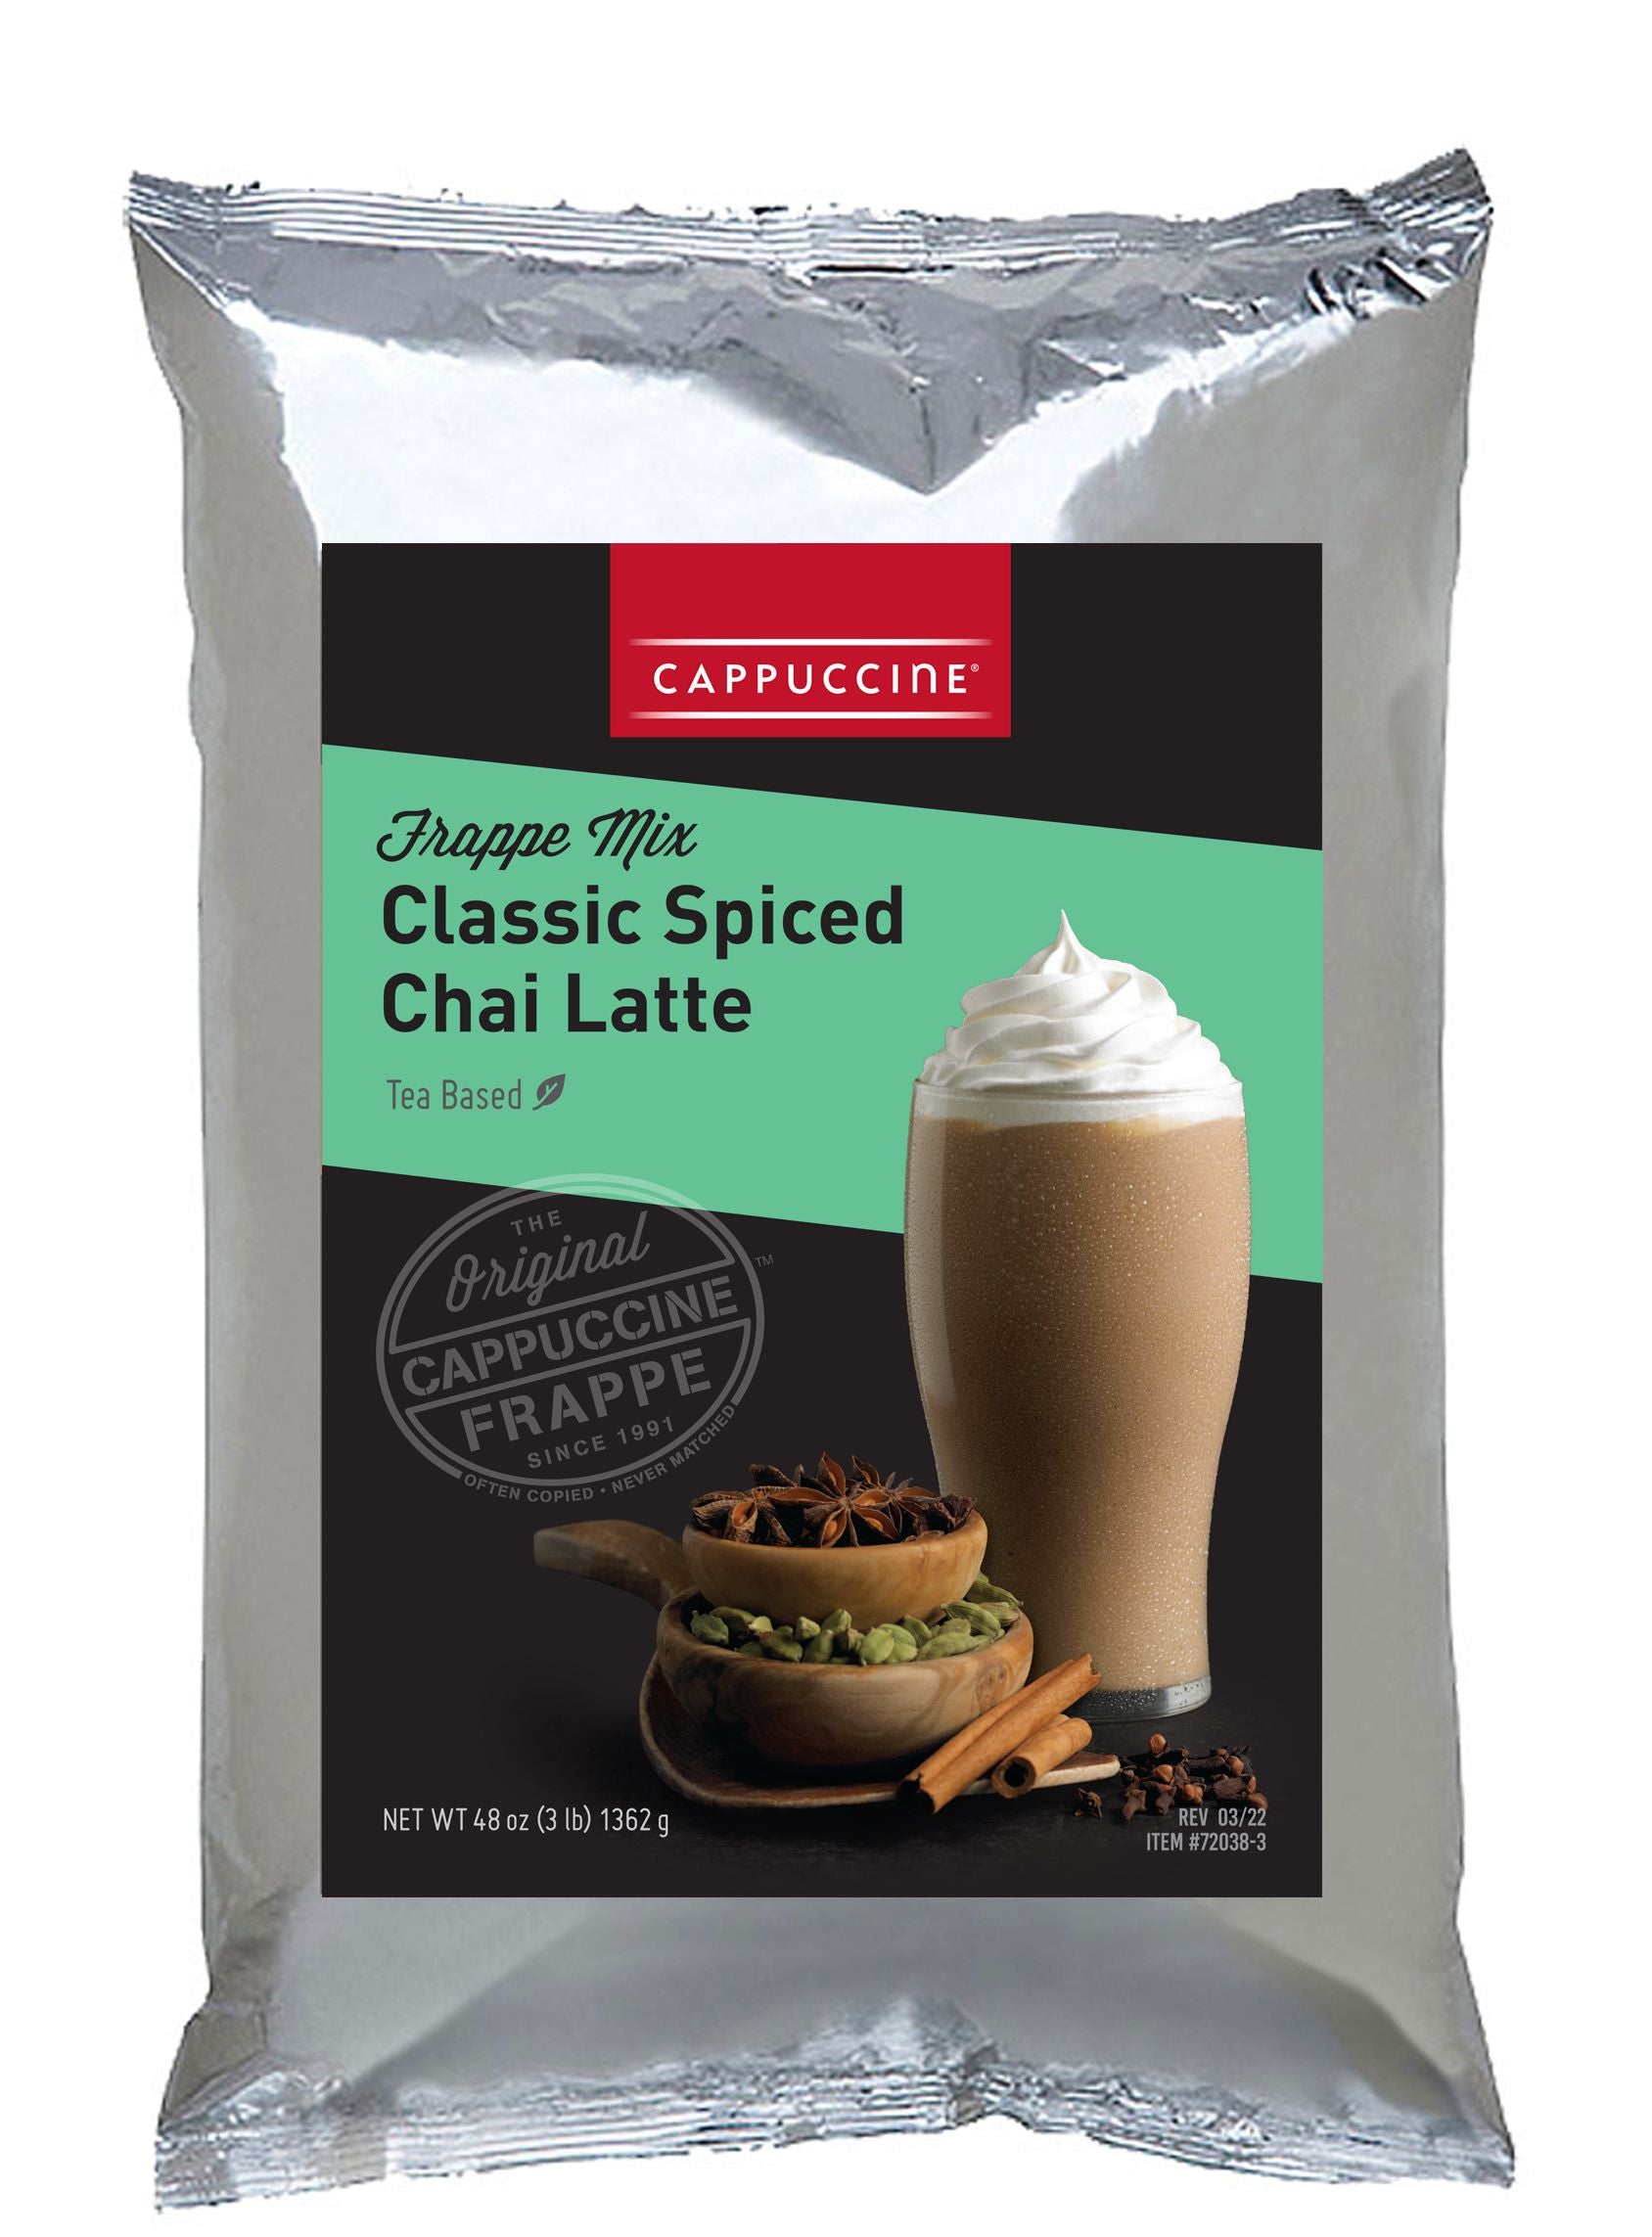 Cappuccine Tea Frappe Mix - 3 lb. Bulk Bag: Classic Spiced Chai Latte